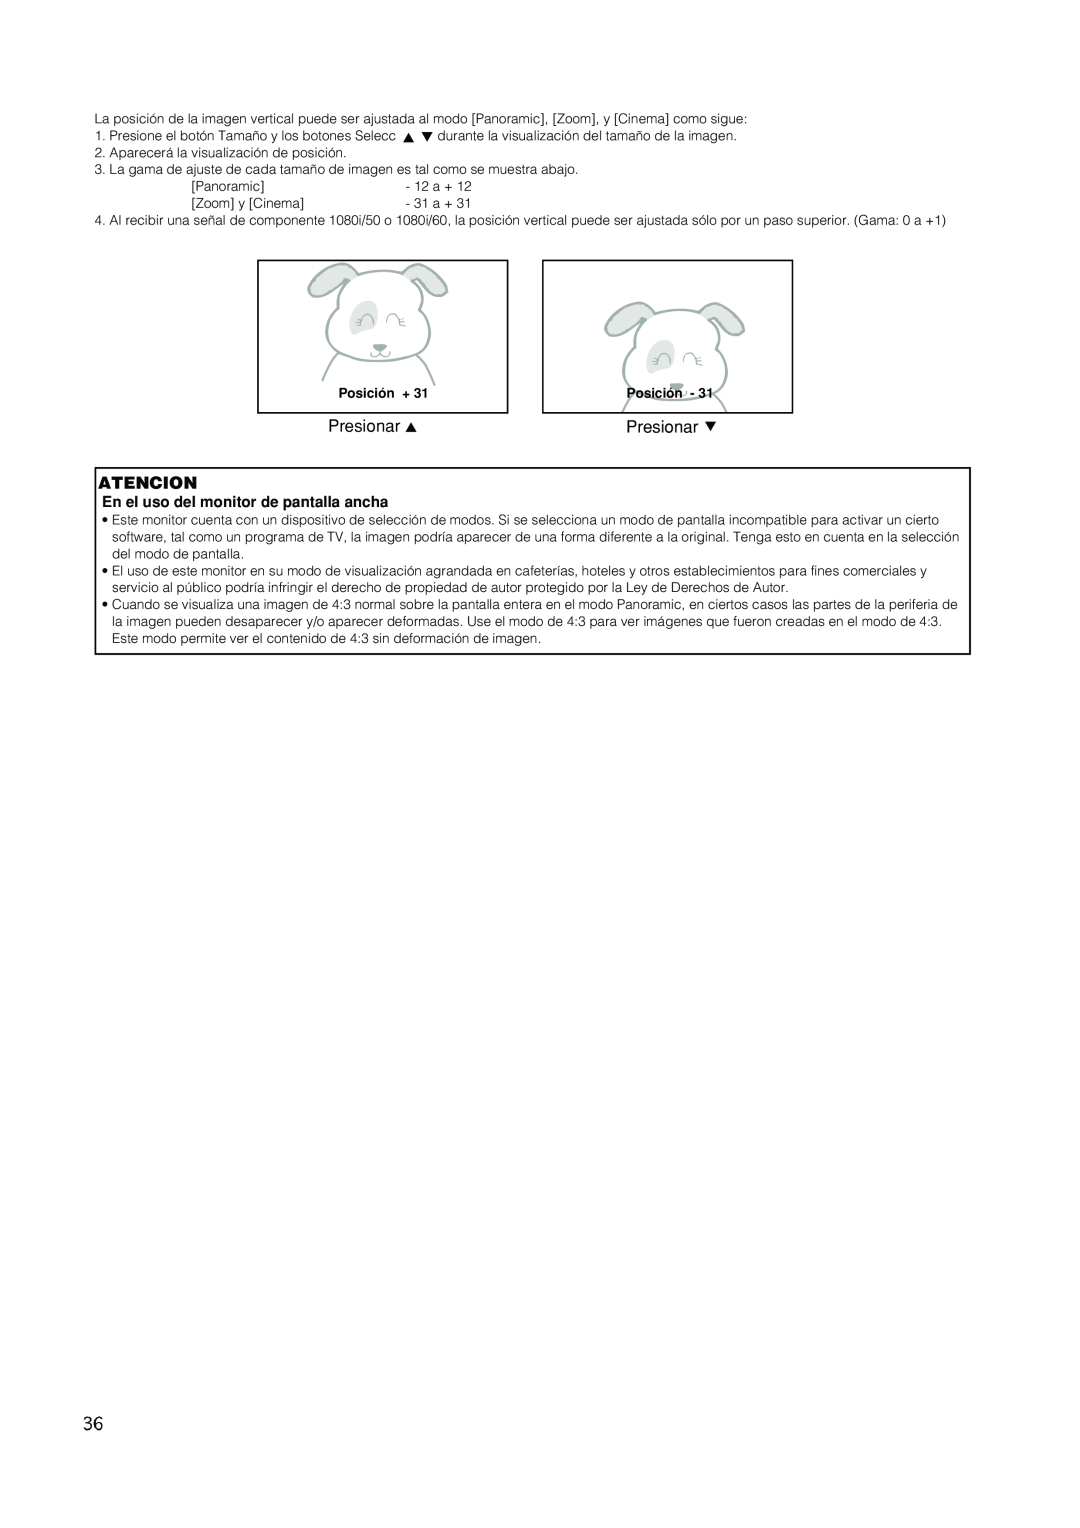 Hitachi PW1A user manual Presionar, Atencion, En el uso del monitor de pantalla ancha, Posición + 